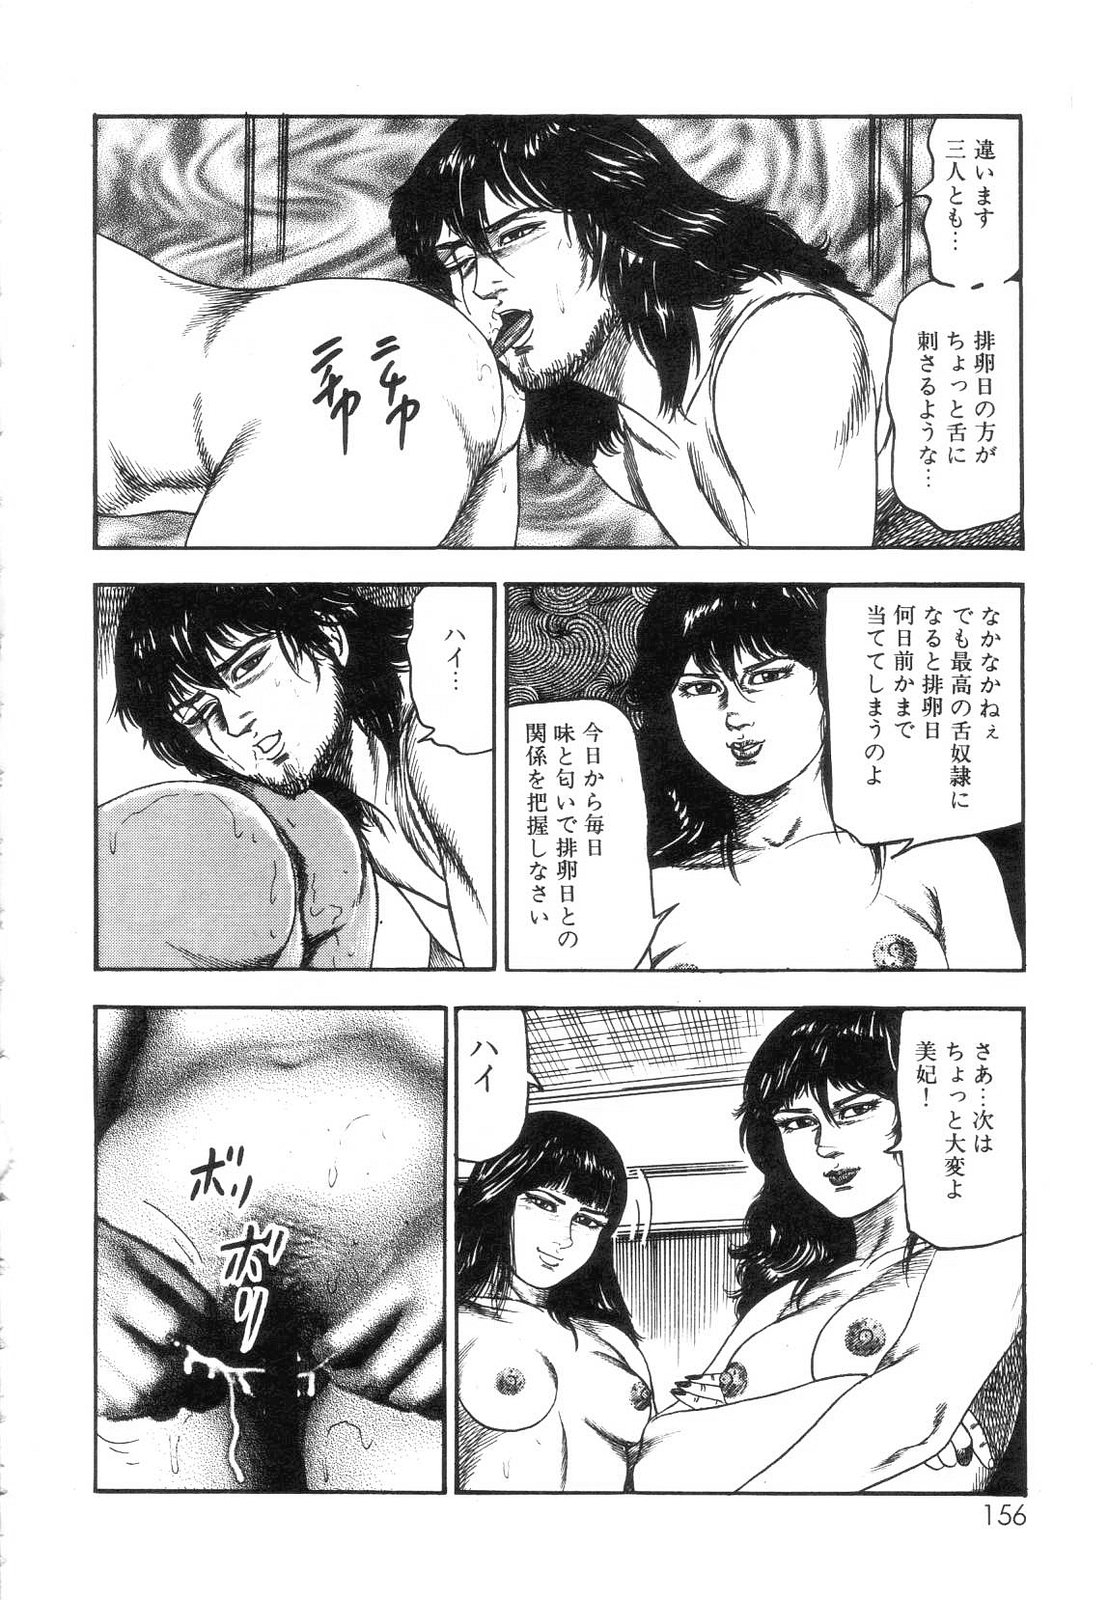 [Sanjou Tomomi] Shiro no Mokushiroku Vol. 7 - Shiiku Ningyou Erika no Shou 157